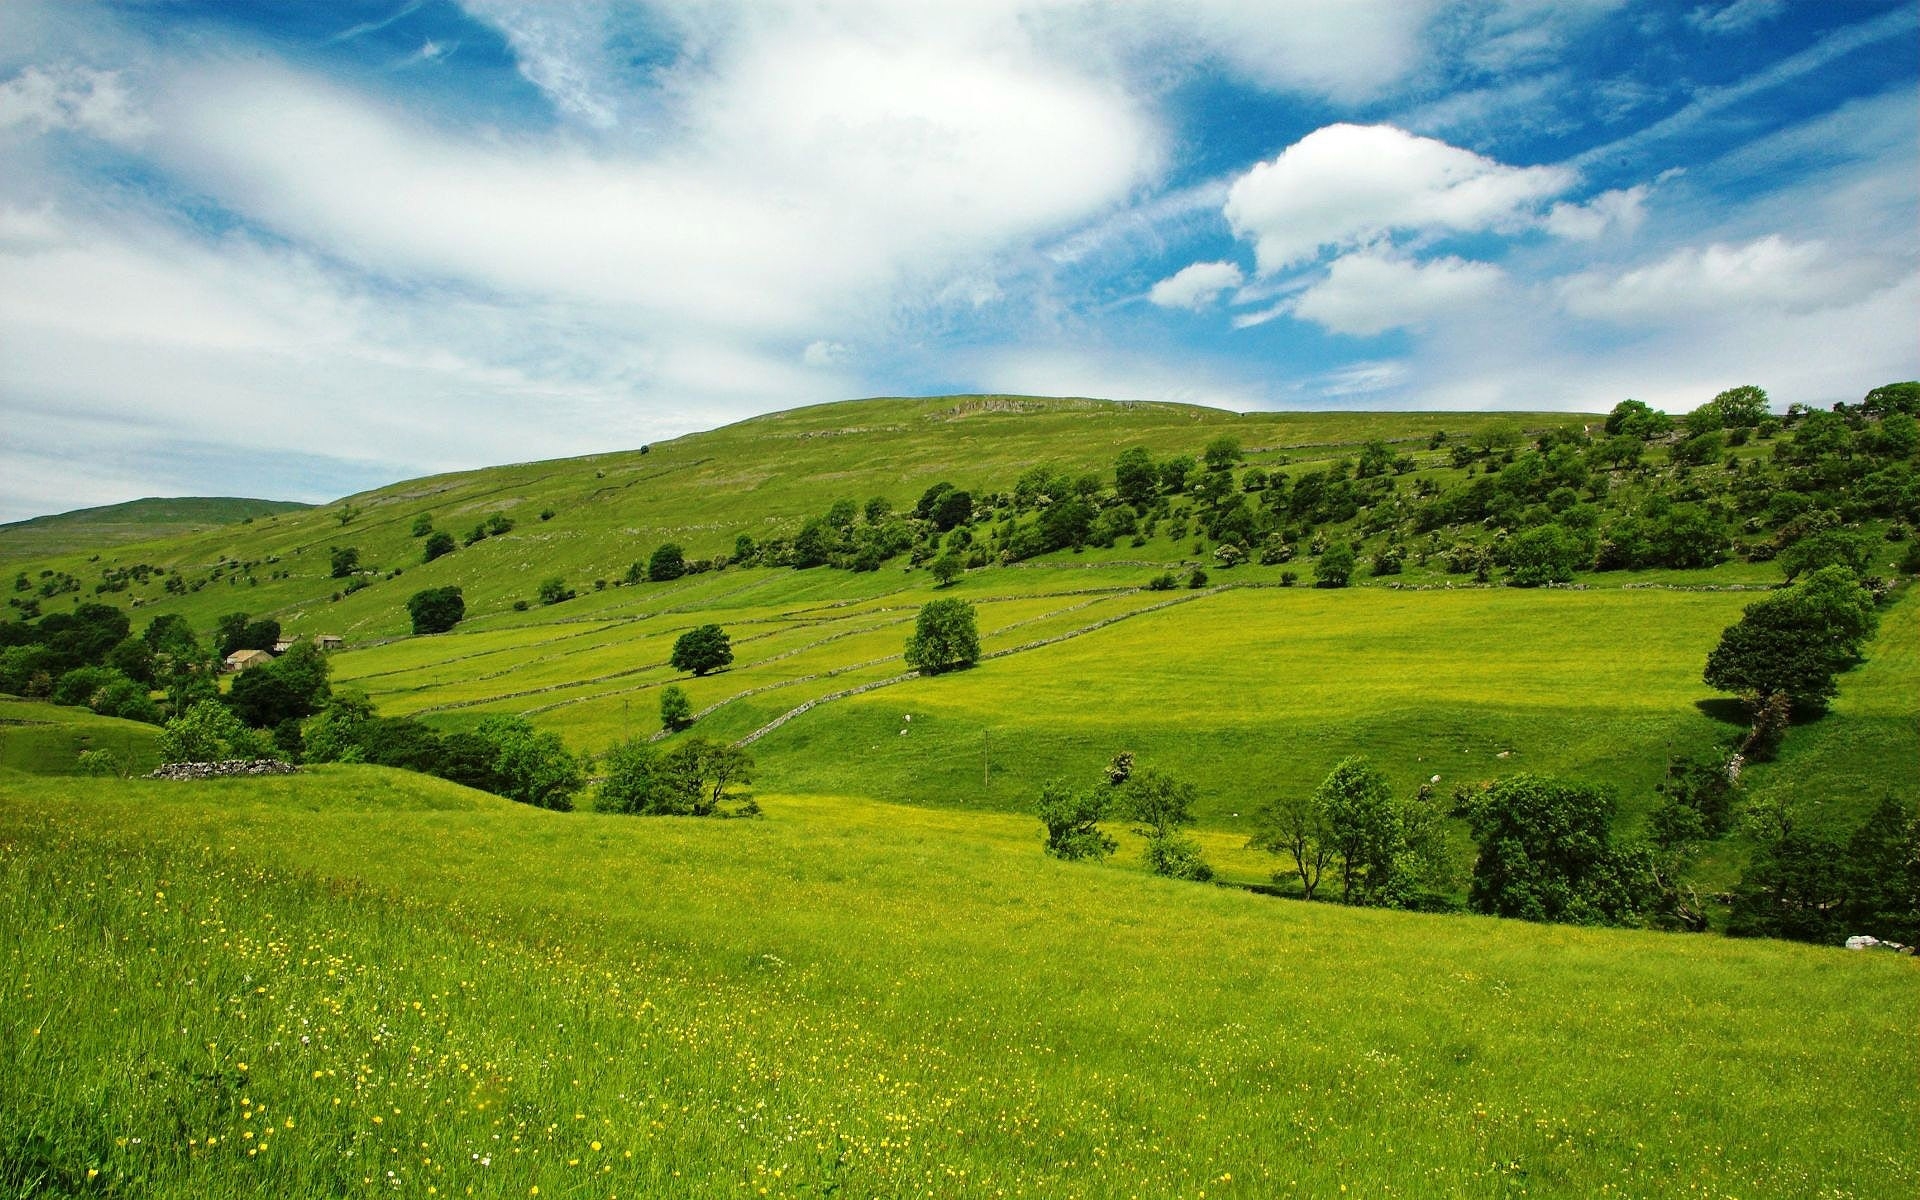 Картинки Долины, луга, зеленый, склоны, трава, деревья, небо, синий фото и обои на рабочий стол